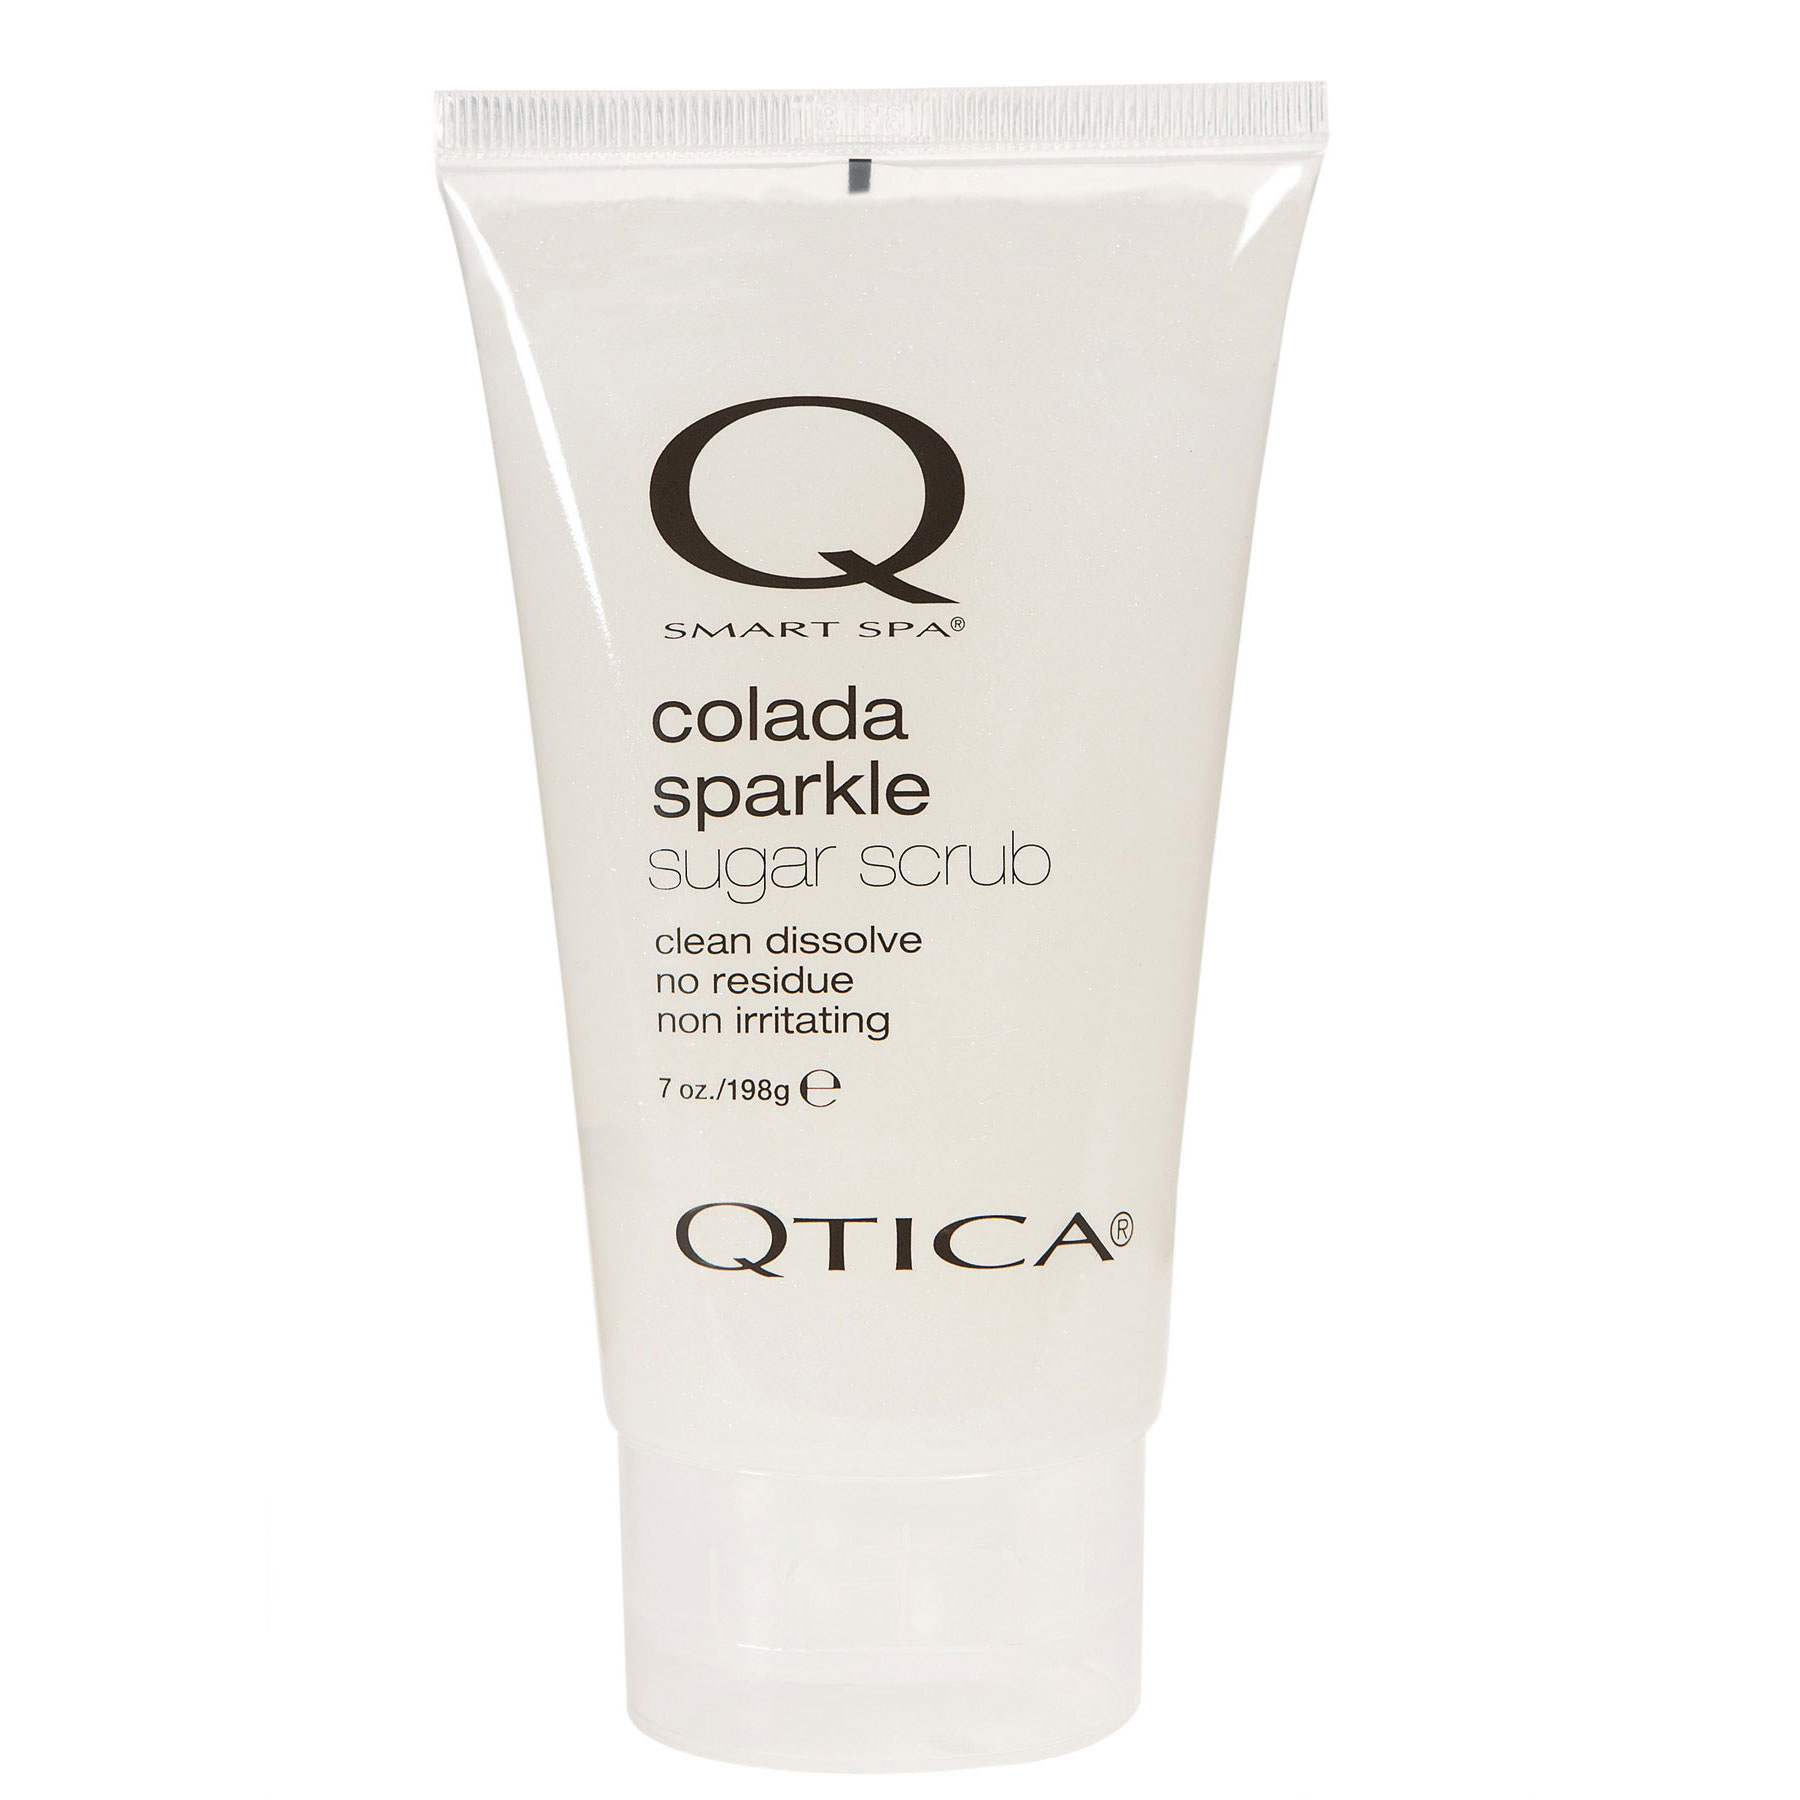 Qtica Smart Spa - Colada Sparkle Sugar Scrub